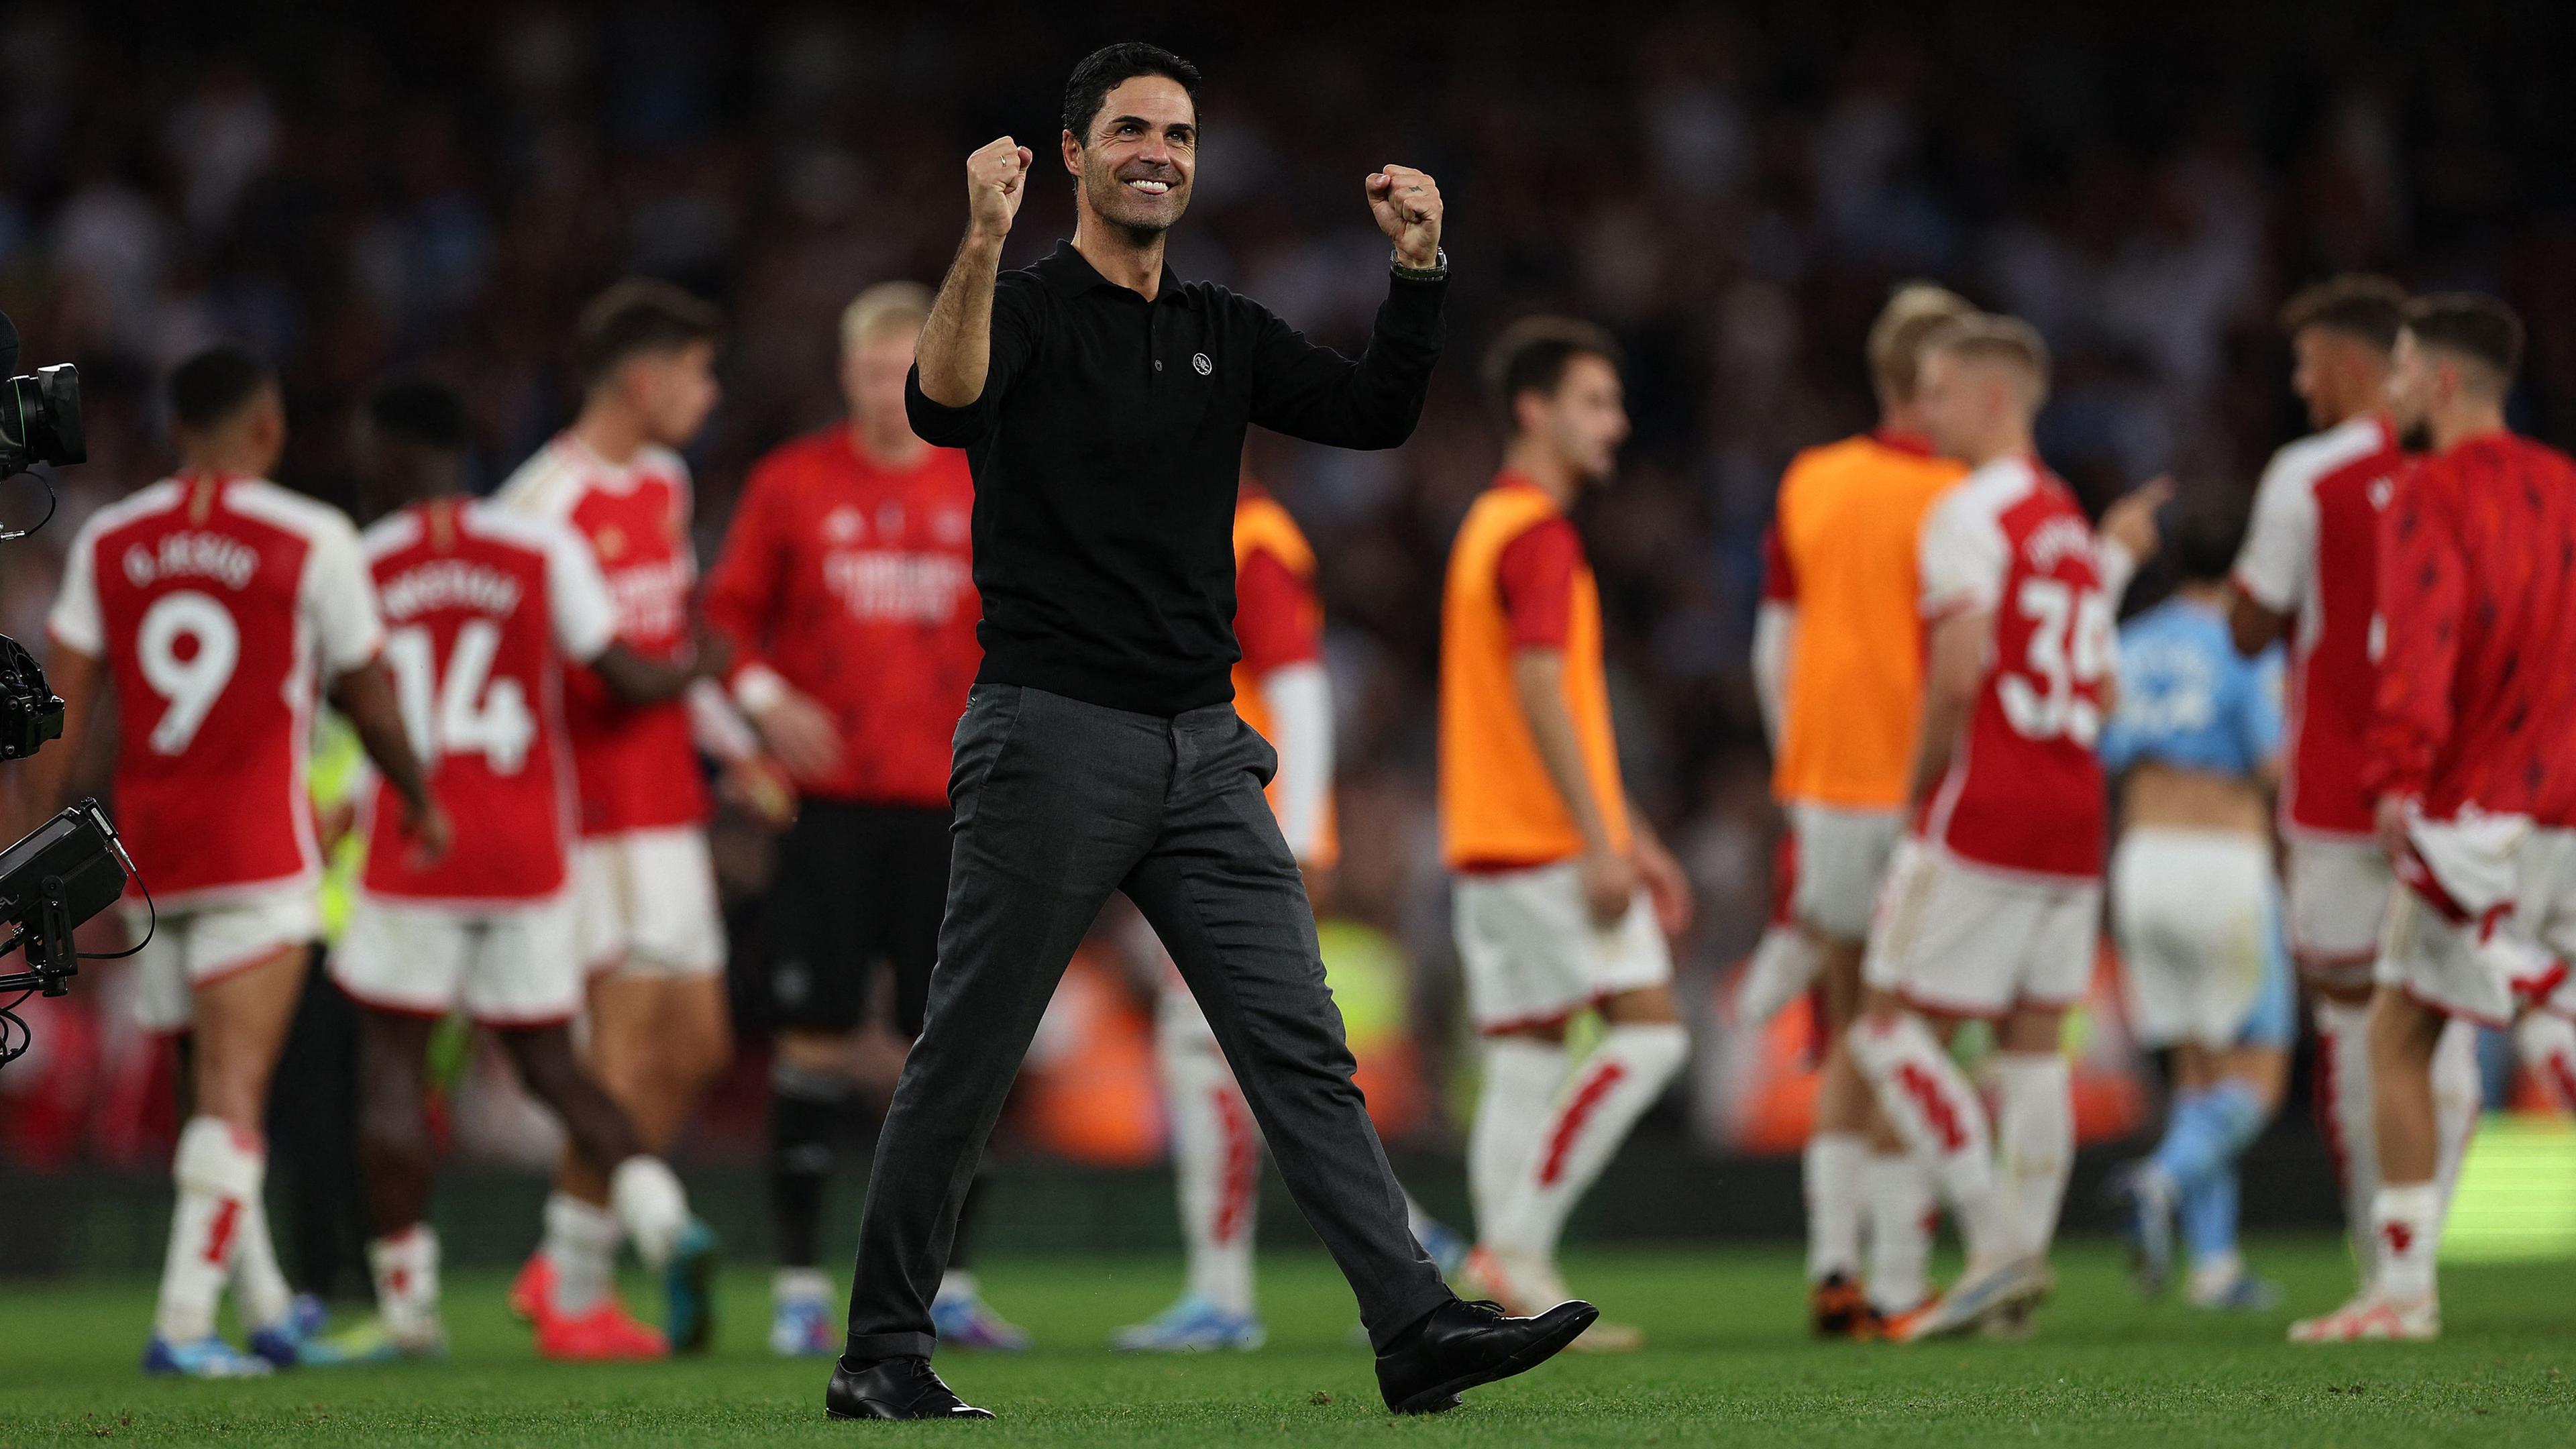 Arsenal-Trainer Mikel Arteta jubelt nach einem Sieg seiner Mannschaft